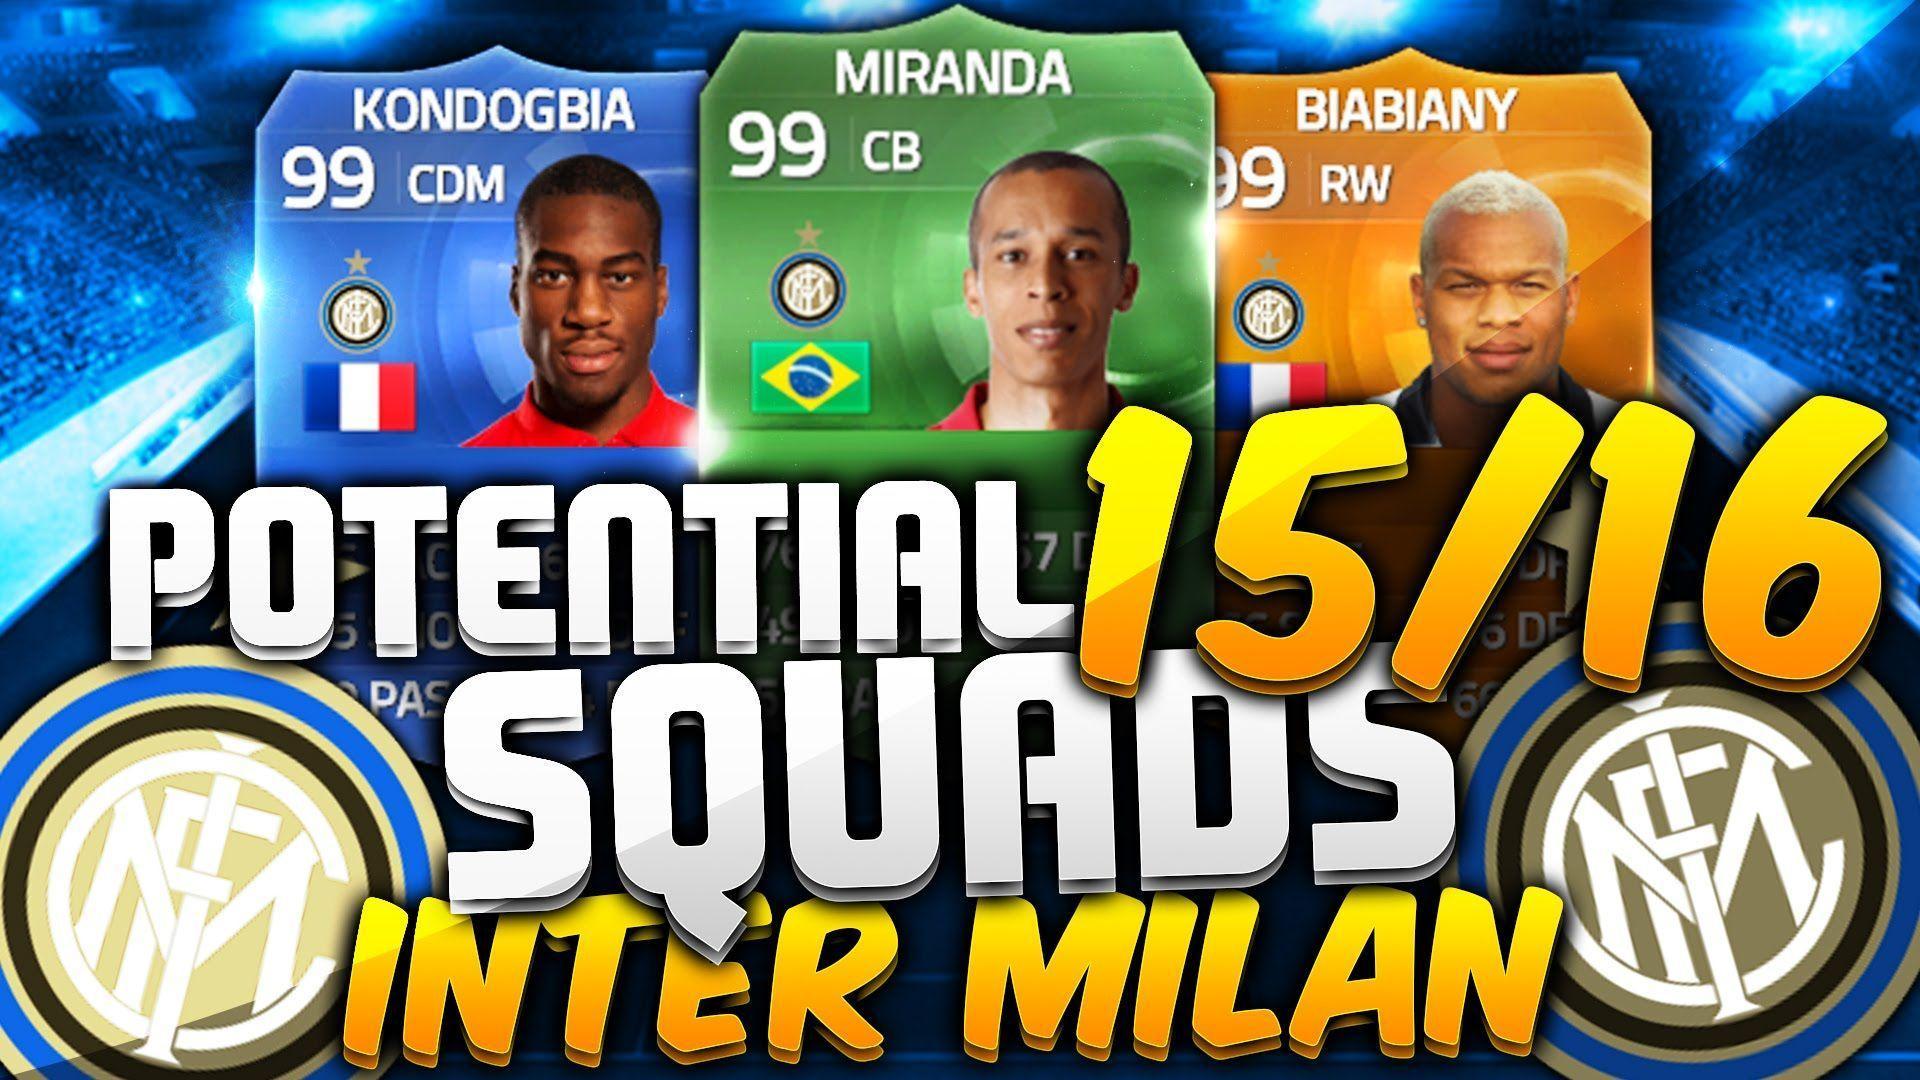 UT16: CRAZY Potential 2016 INTER MILAN Squad. Special